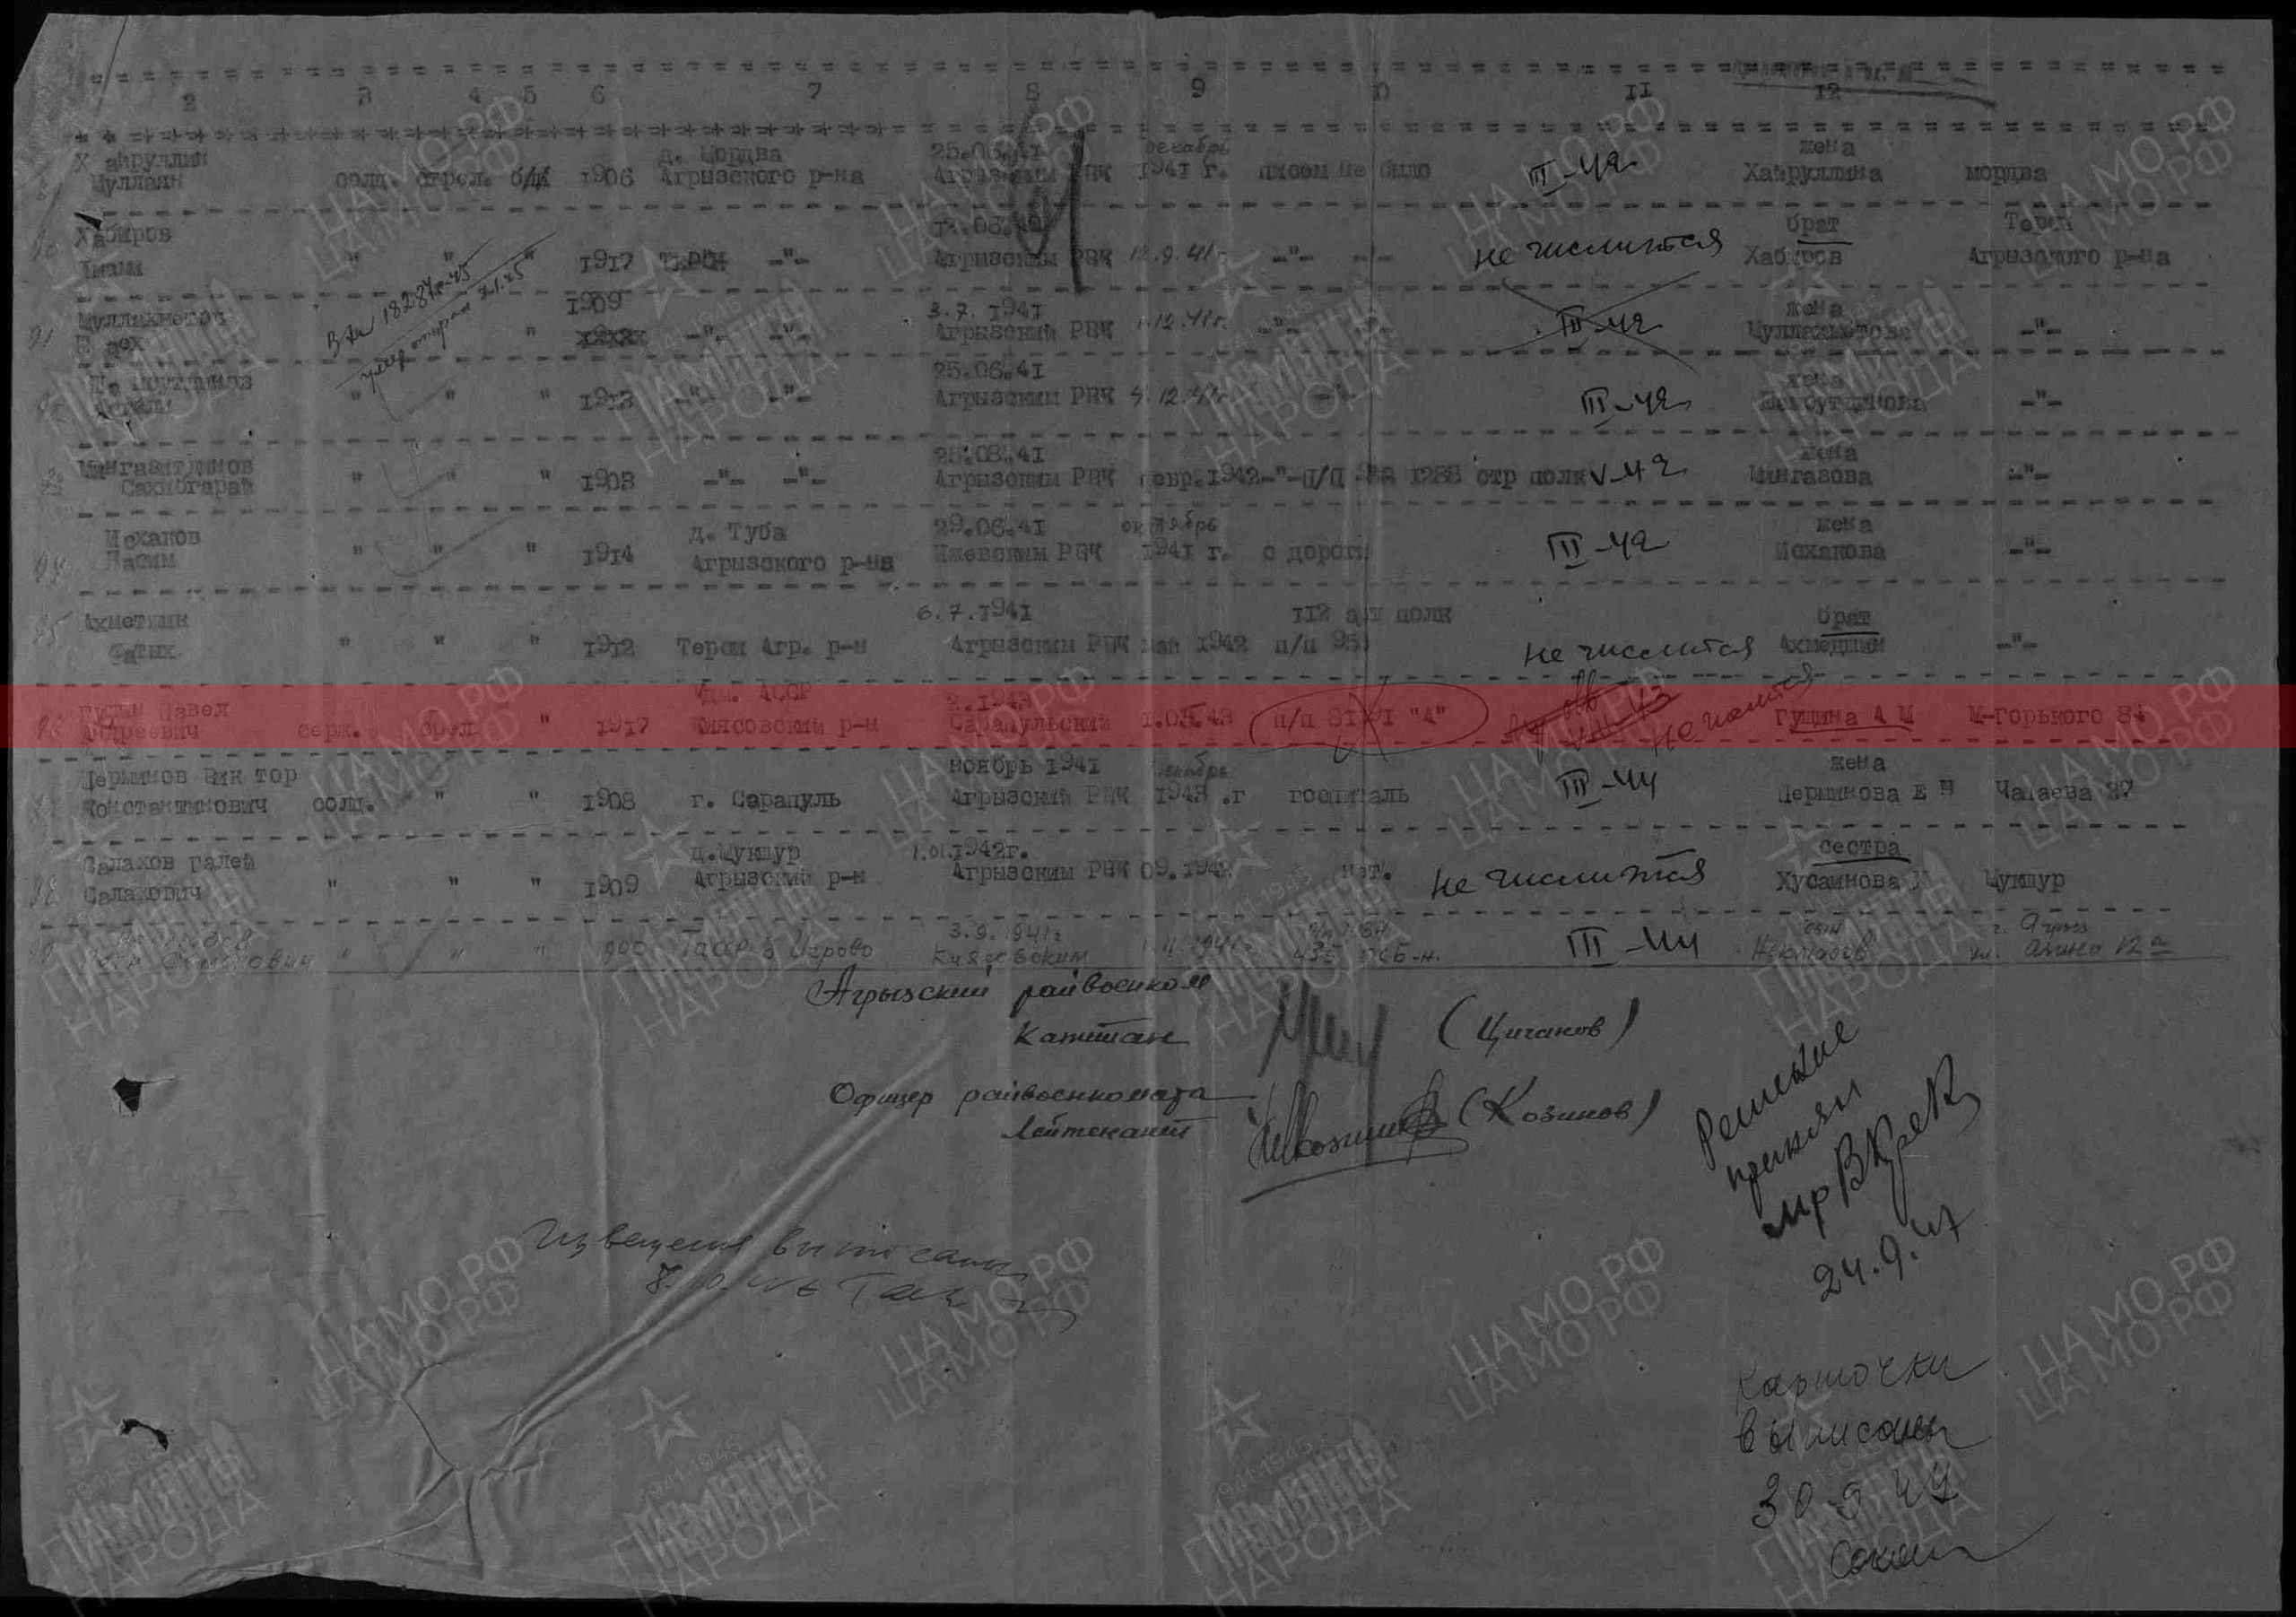 Лист донесения послевоенного периода, уточняющего потери, 16.09.1947